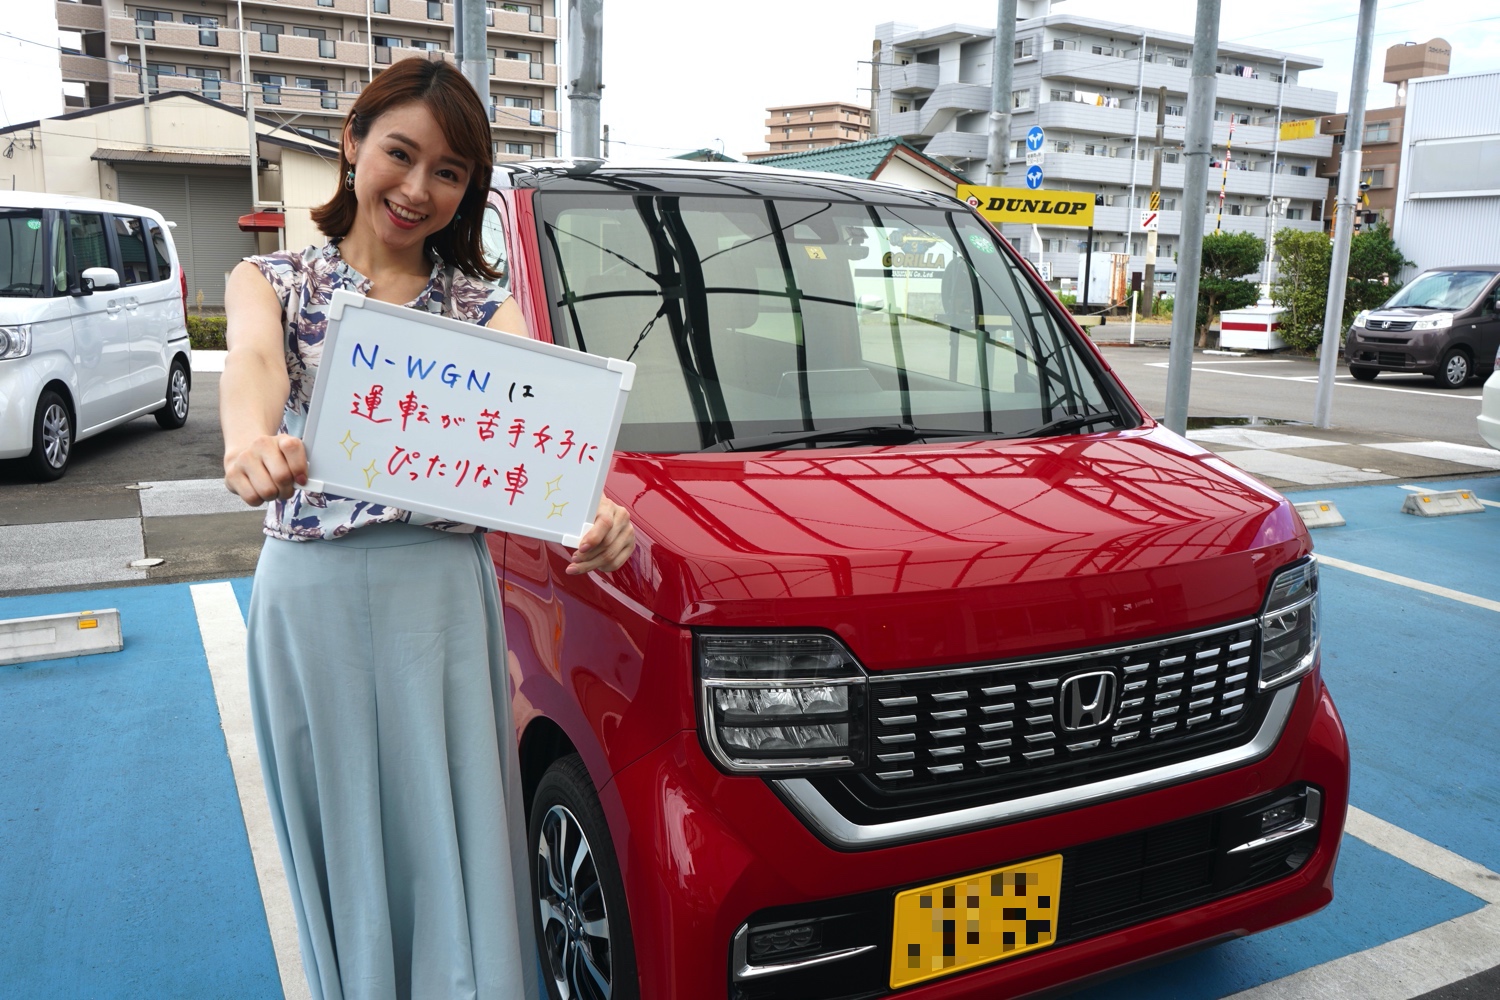 ピーピーシステム もっと女性目線でクルマを知りたい 前編 Honda Local 宮崎県ホンダカーズブログ